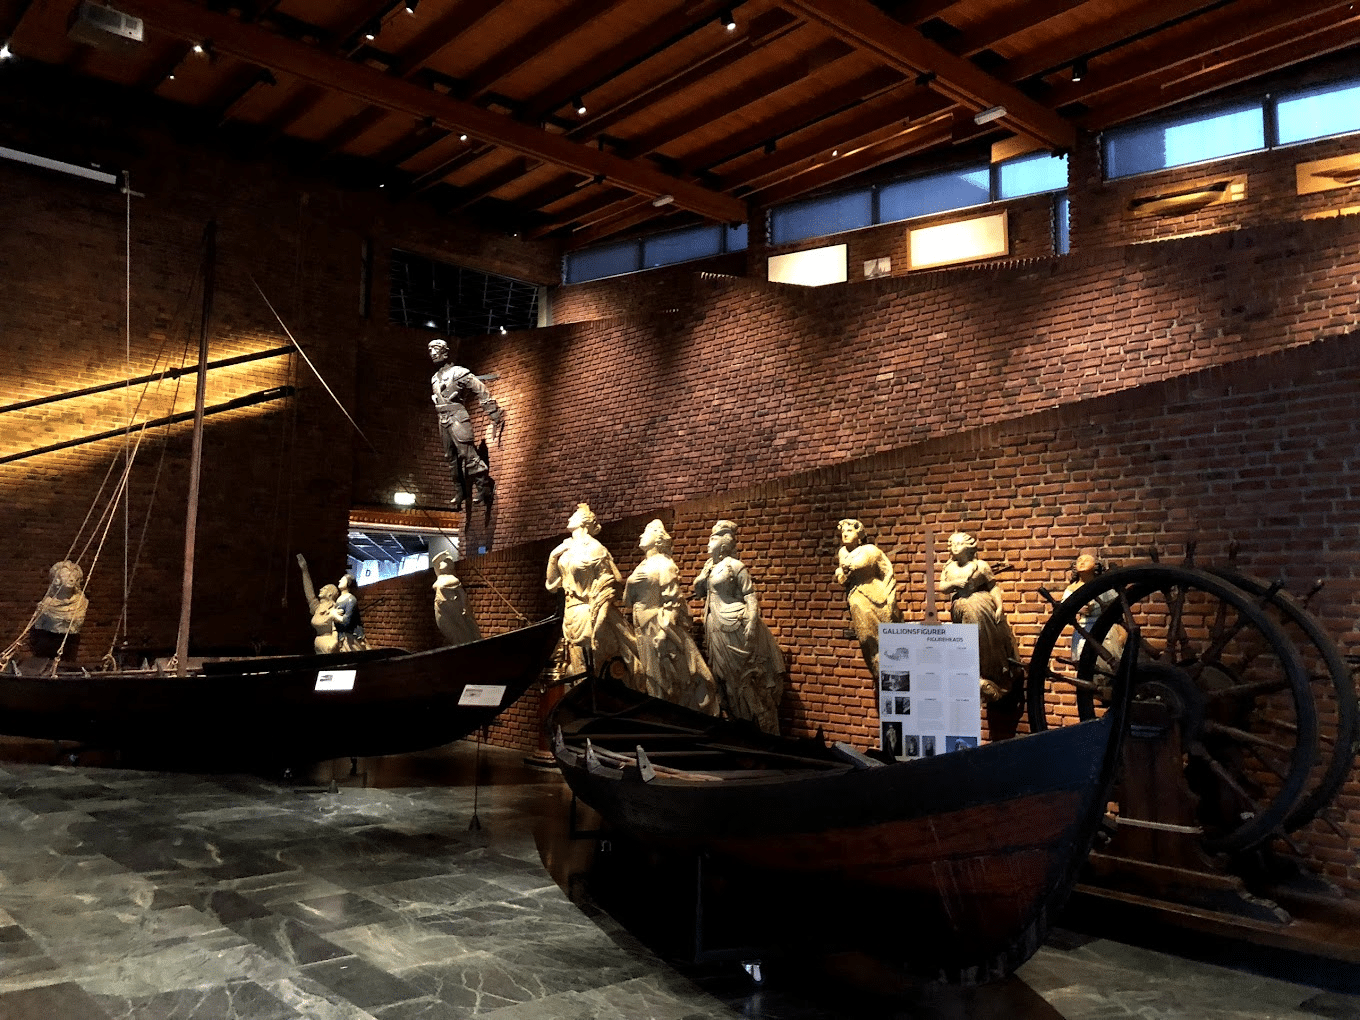 Norwegian Maritime Museum Overview